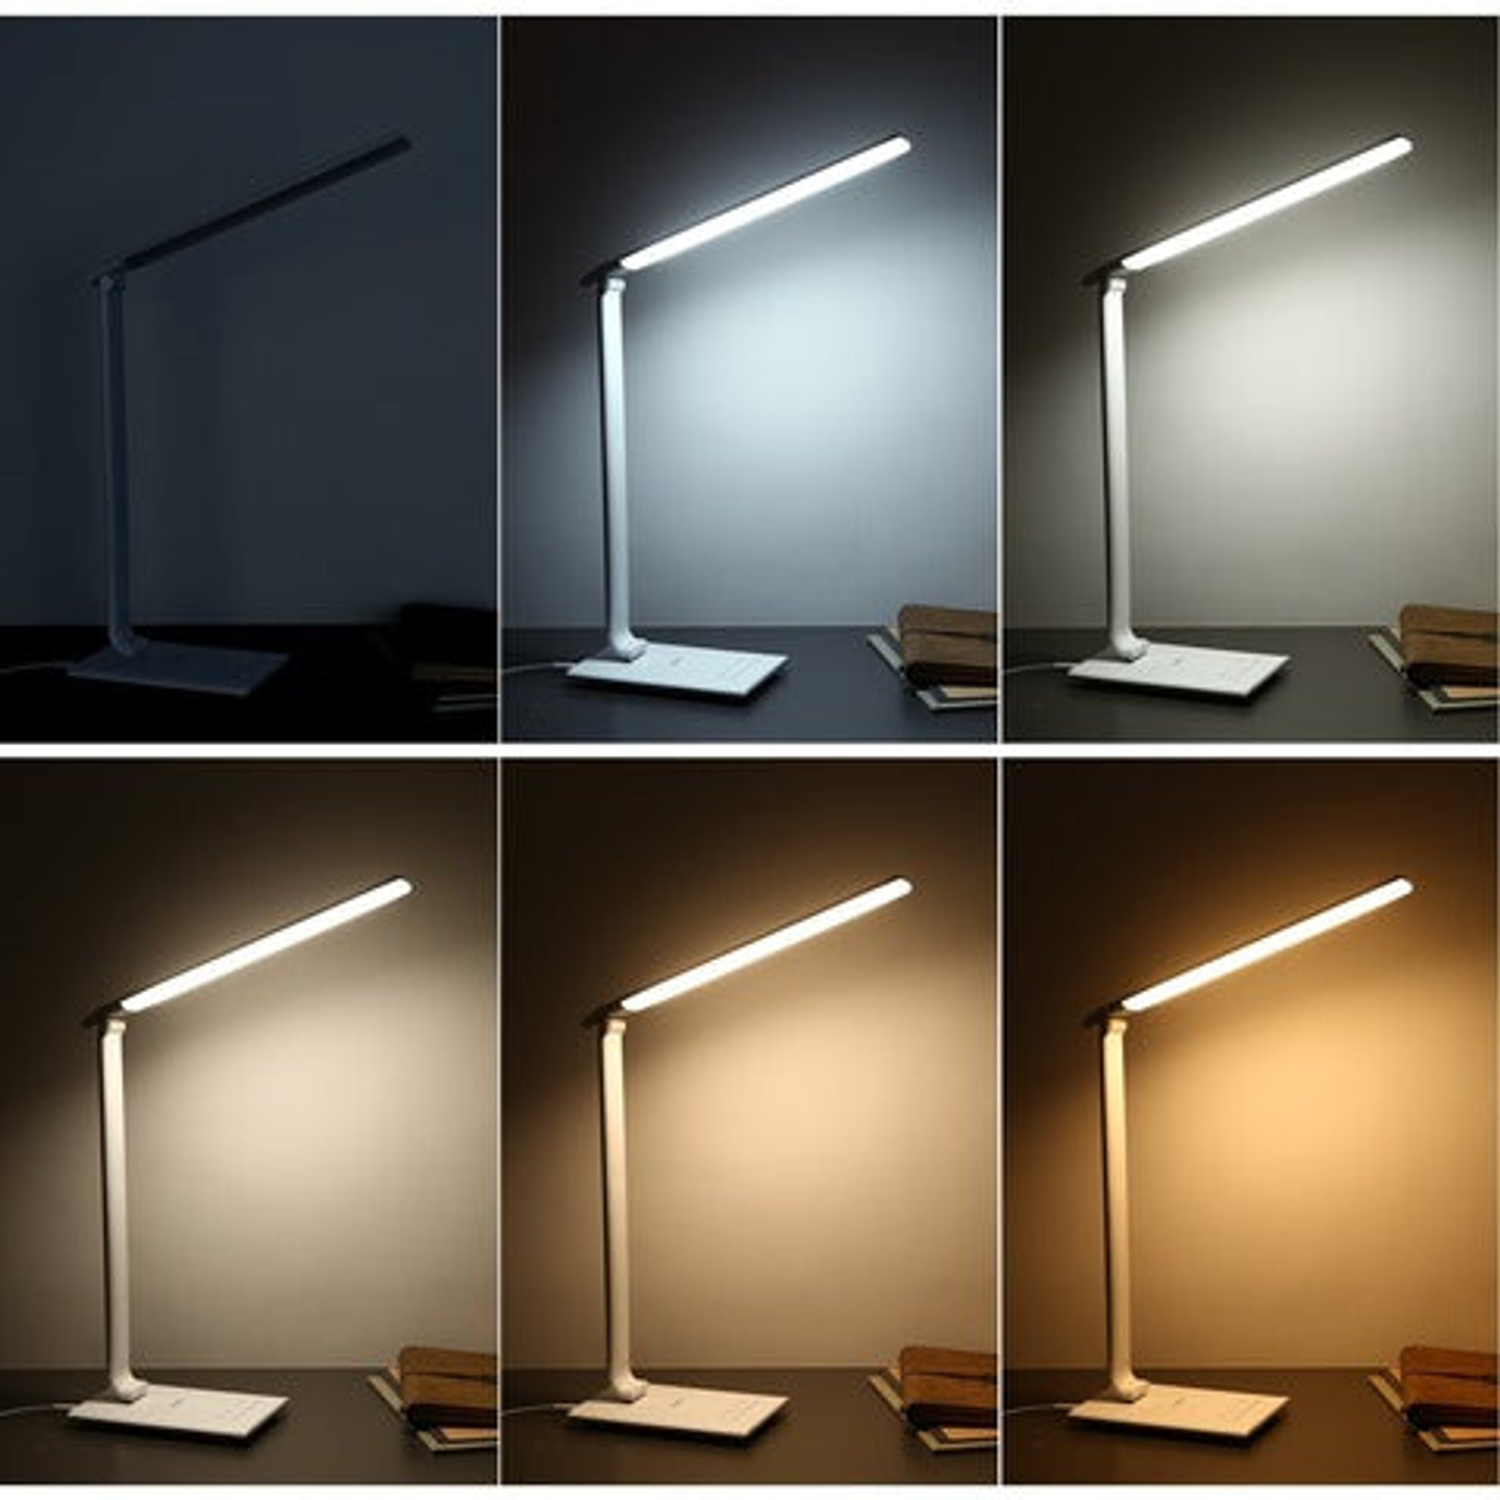 Tischlampe AUKEY Lampe LT-T10-Whi LED